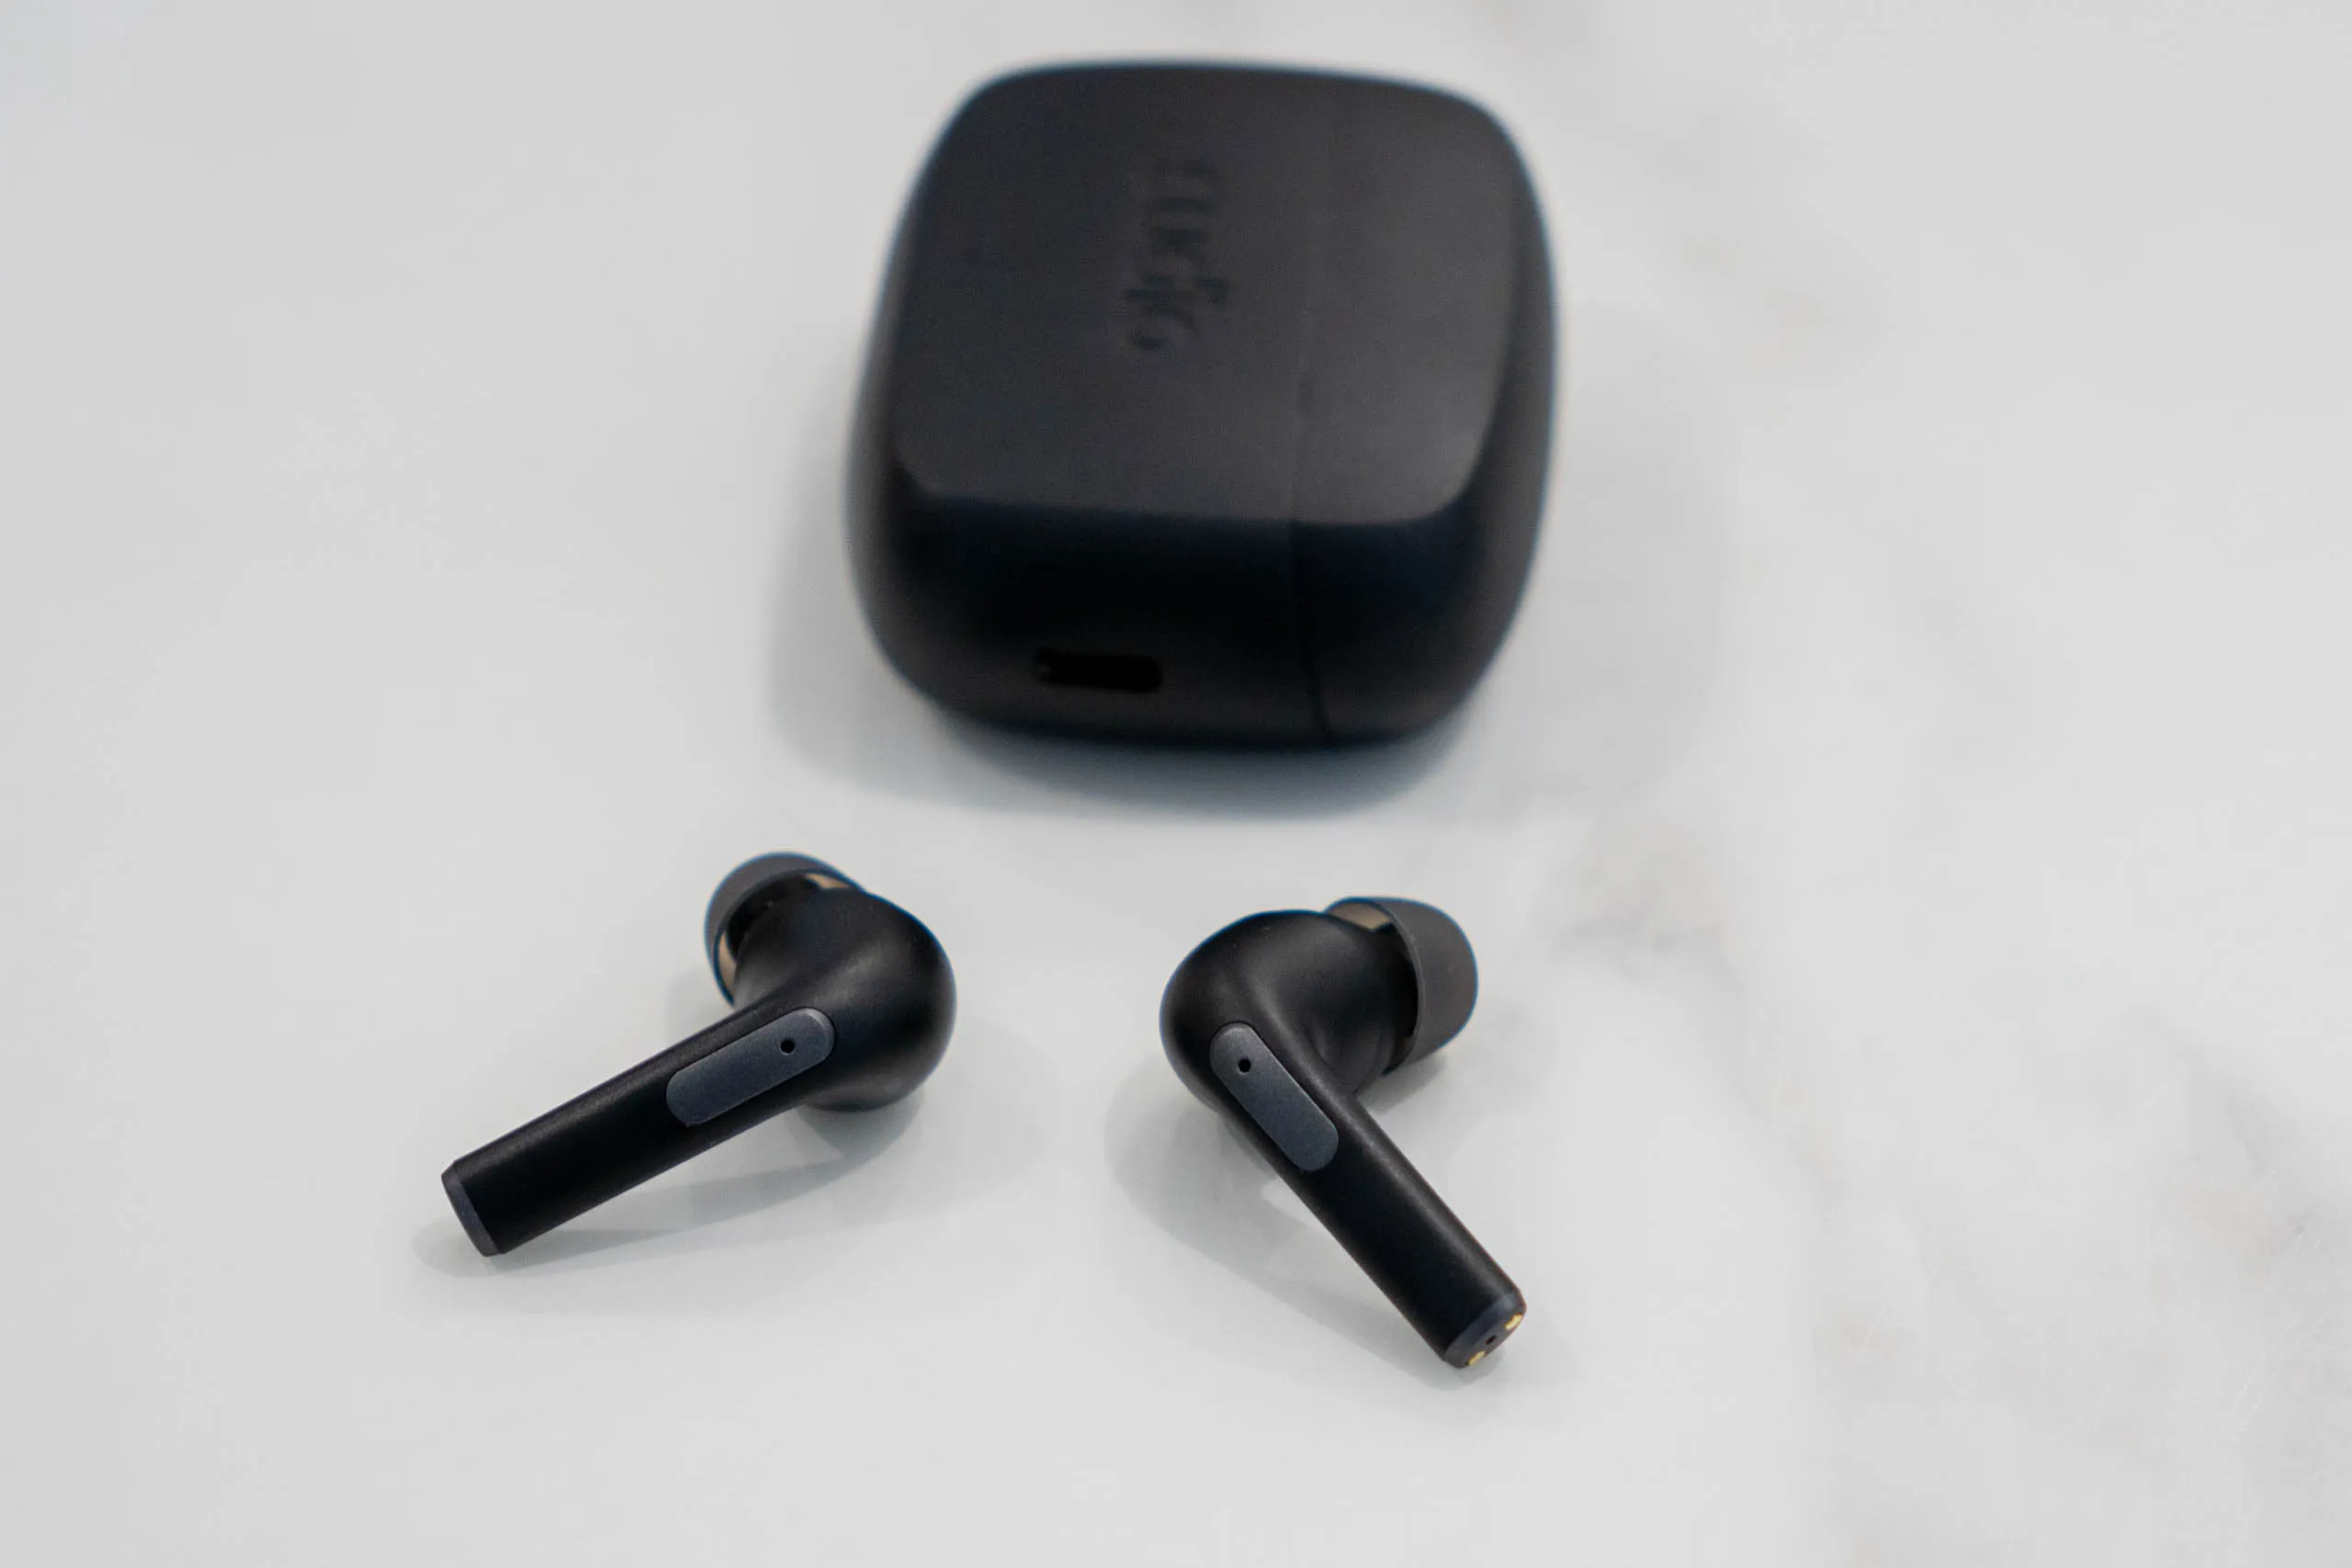 Đánh giá tai nghe không dây Sudio N2 Pro - Hoàn thiện đẹp, nhẹ, có chống ồn, chất âm tốt